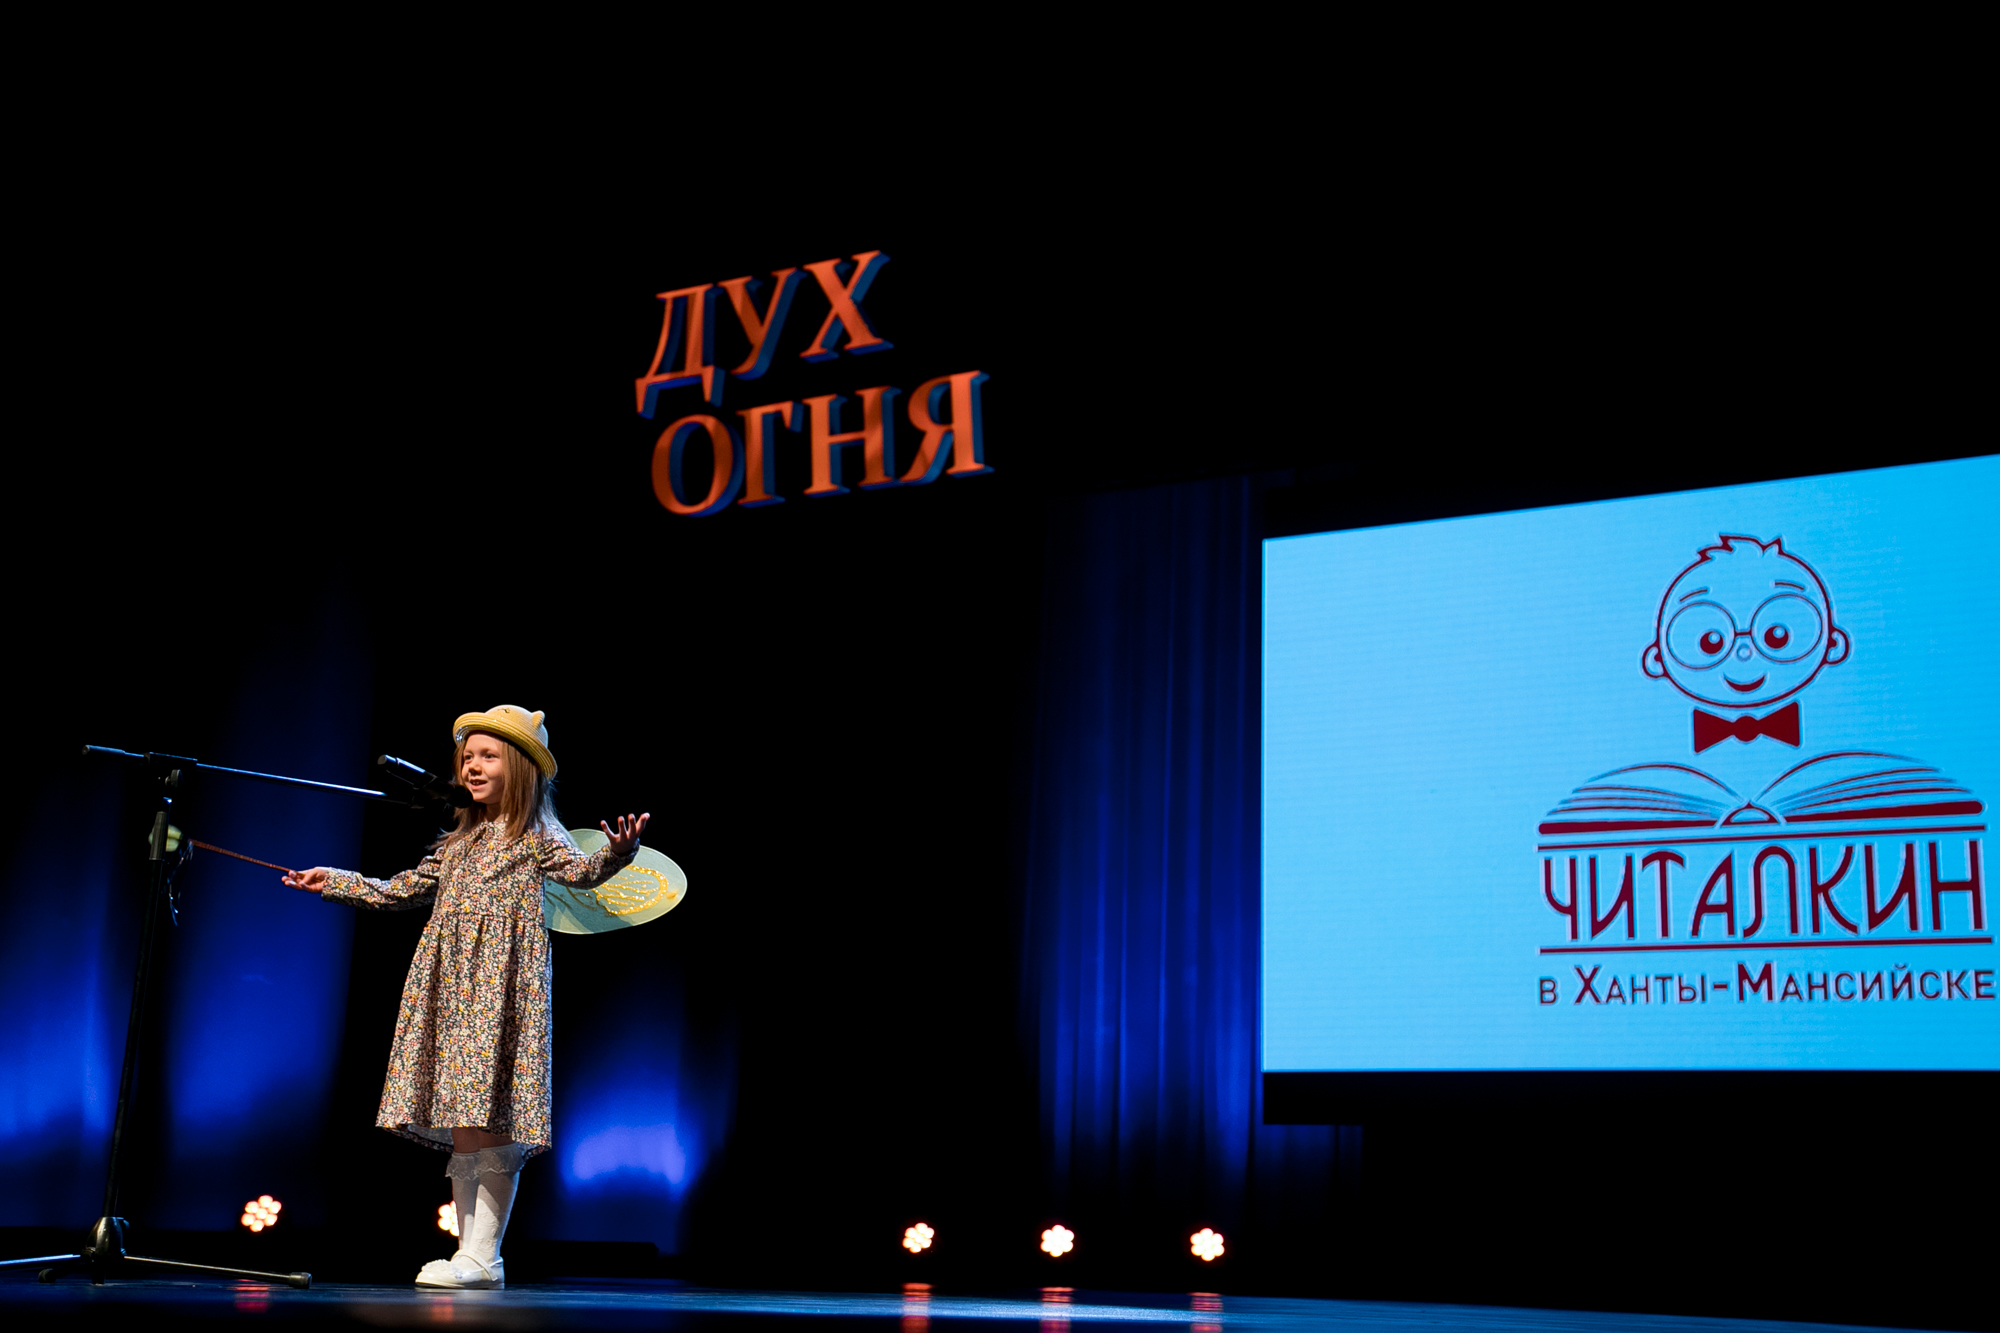 Открыт прием заявок на участие в детском литературном Всероссийском конкурсе «ЧИТАЛКИН»